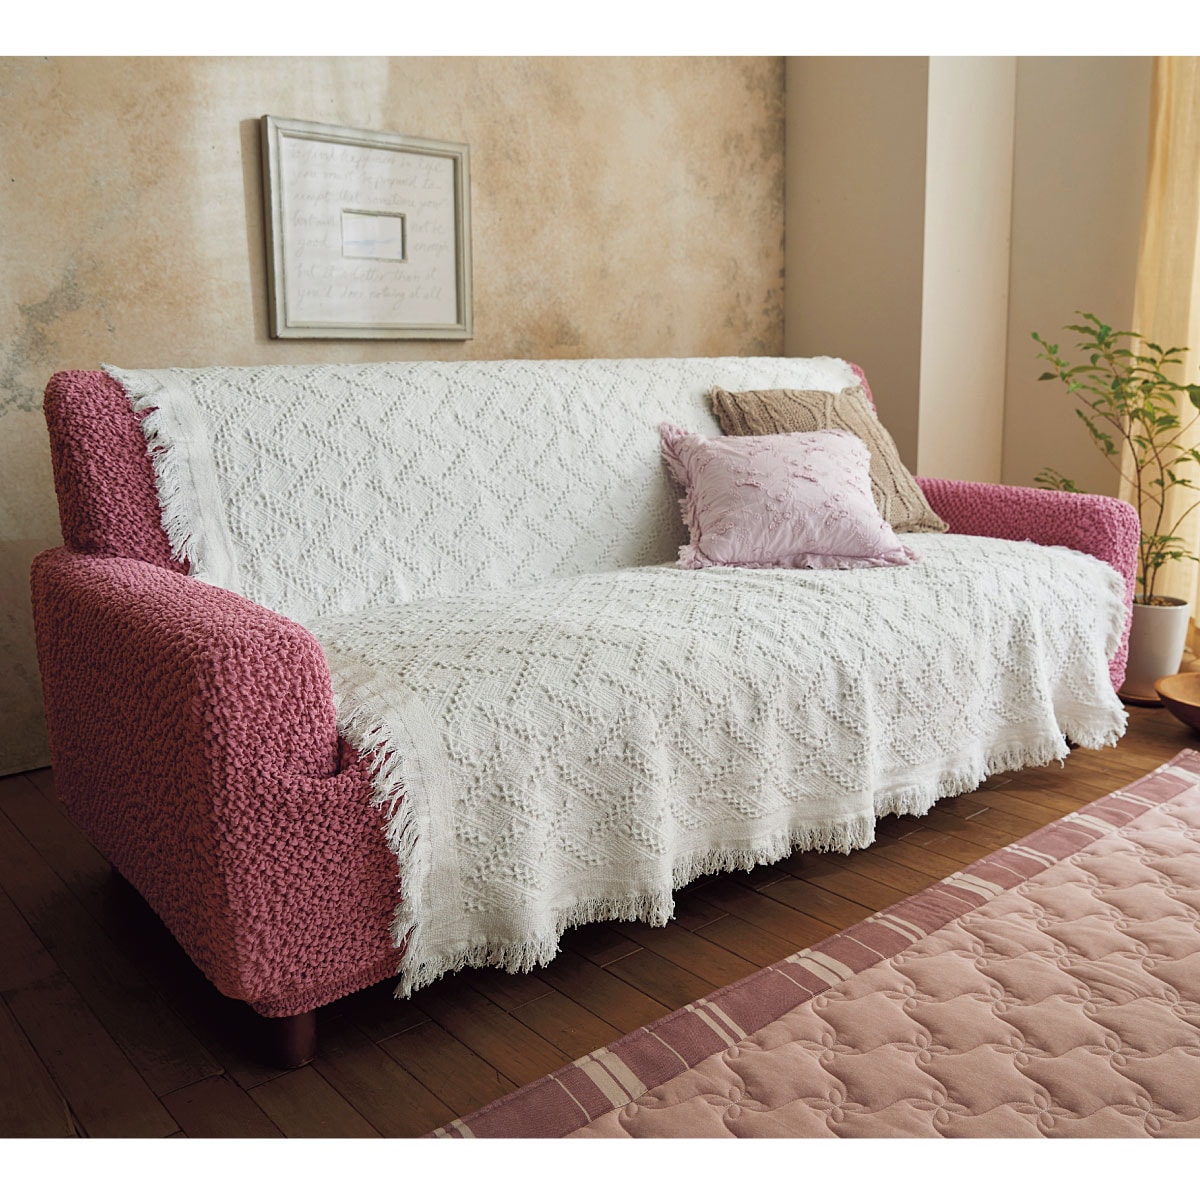 ジャカード織りマルチカバー(ソファカバー・ベッドスプレッド) 肌触りの良いコットンジャカード 明るく魅せる色 - 寝具の通販ならセシール(cecile)